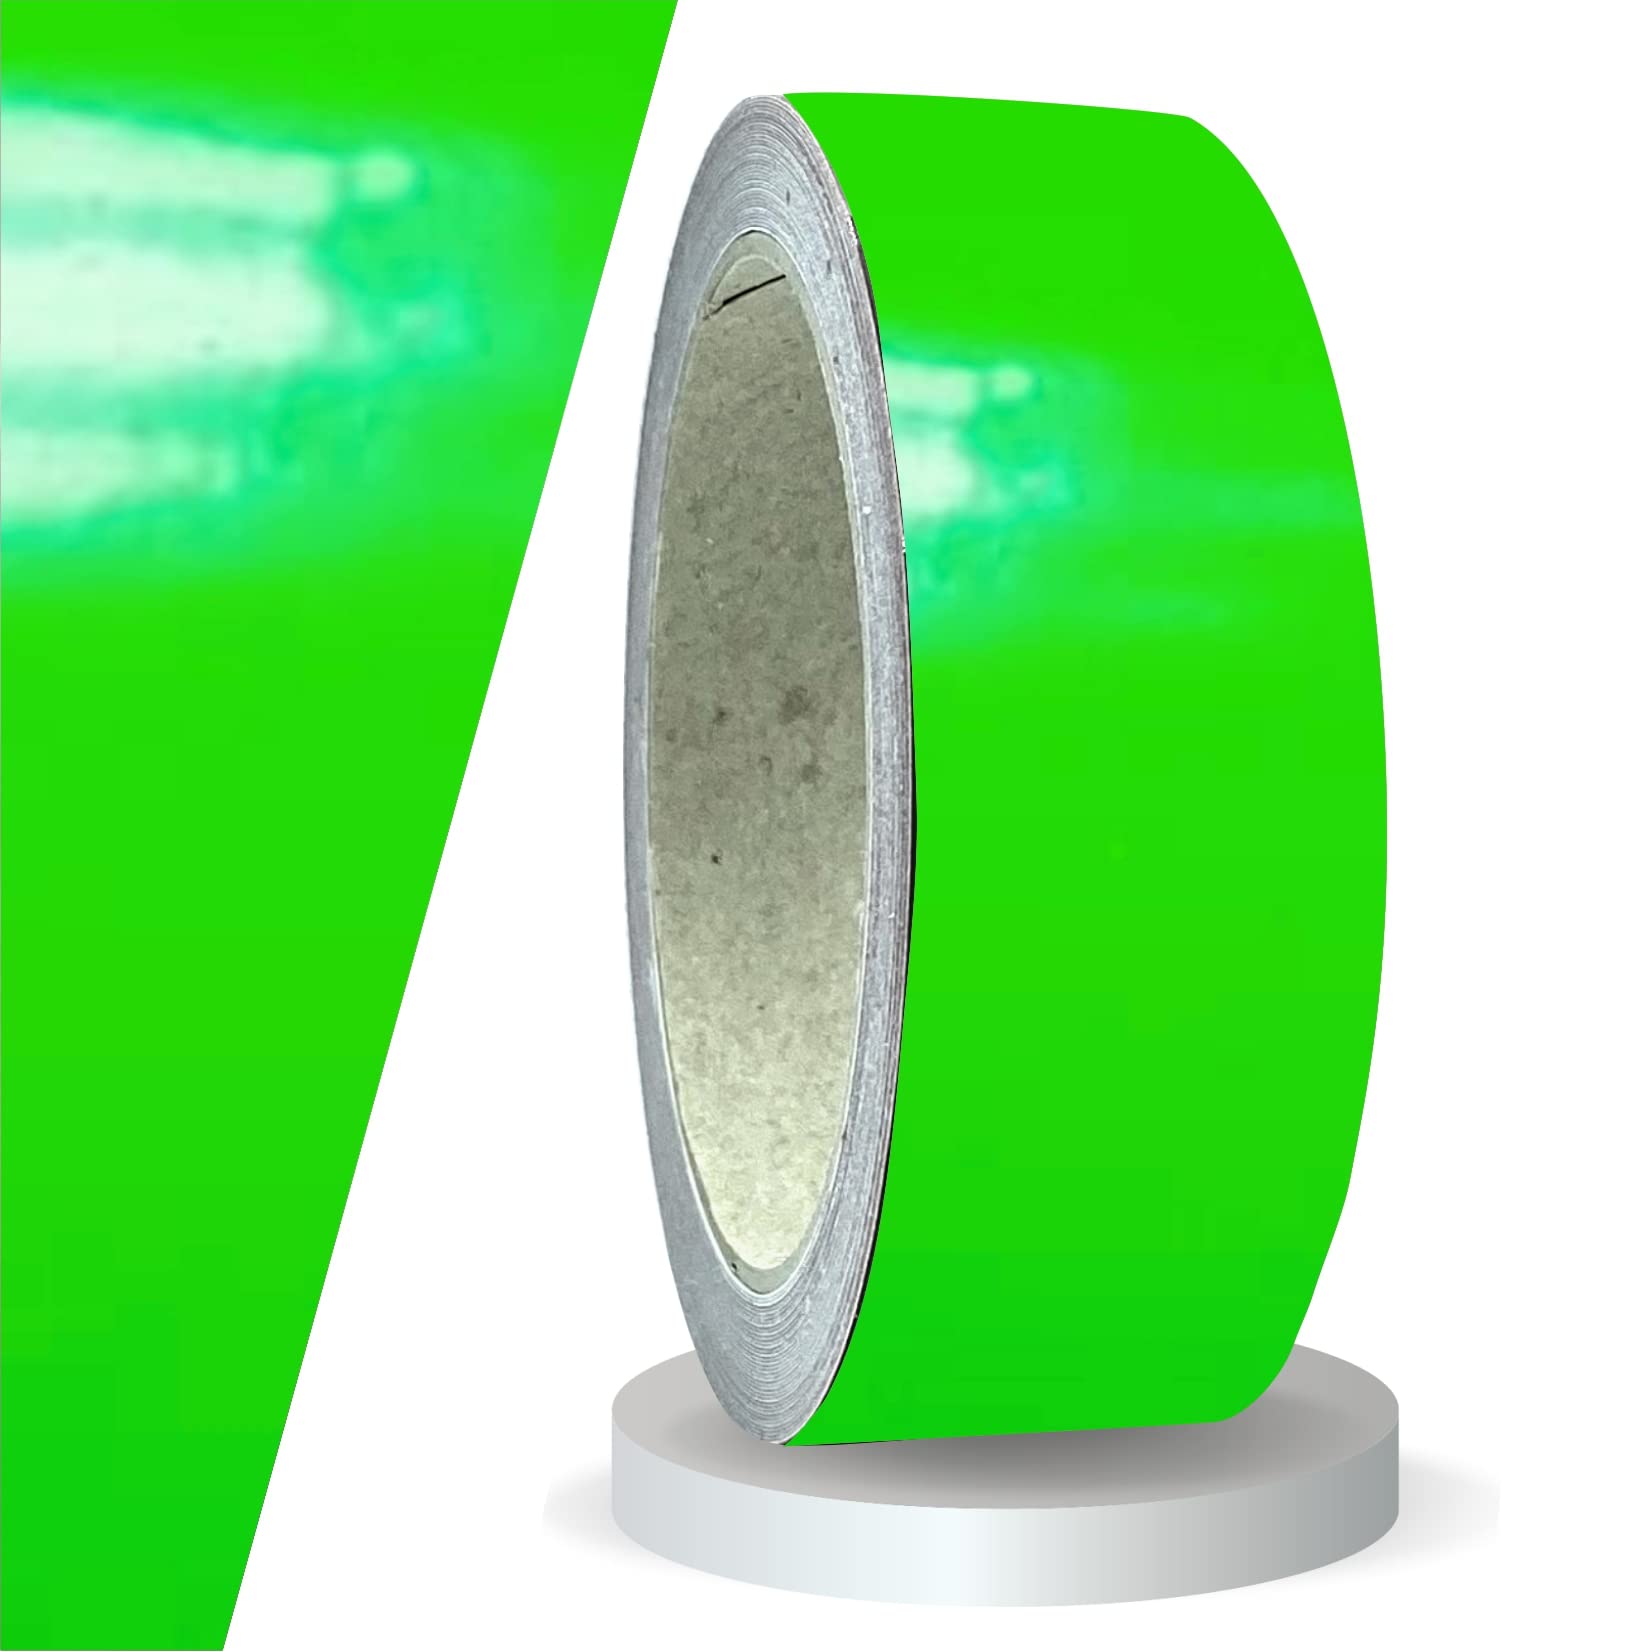 siviwonder Zierstreifen neon grün in 40 mm Breite und 10 m Länge für Auto Boot Jetski Modellbau Klebeband Aufkleber Dekorstreifen neongrün Fluor von siviwonder